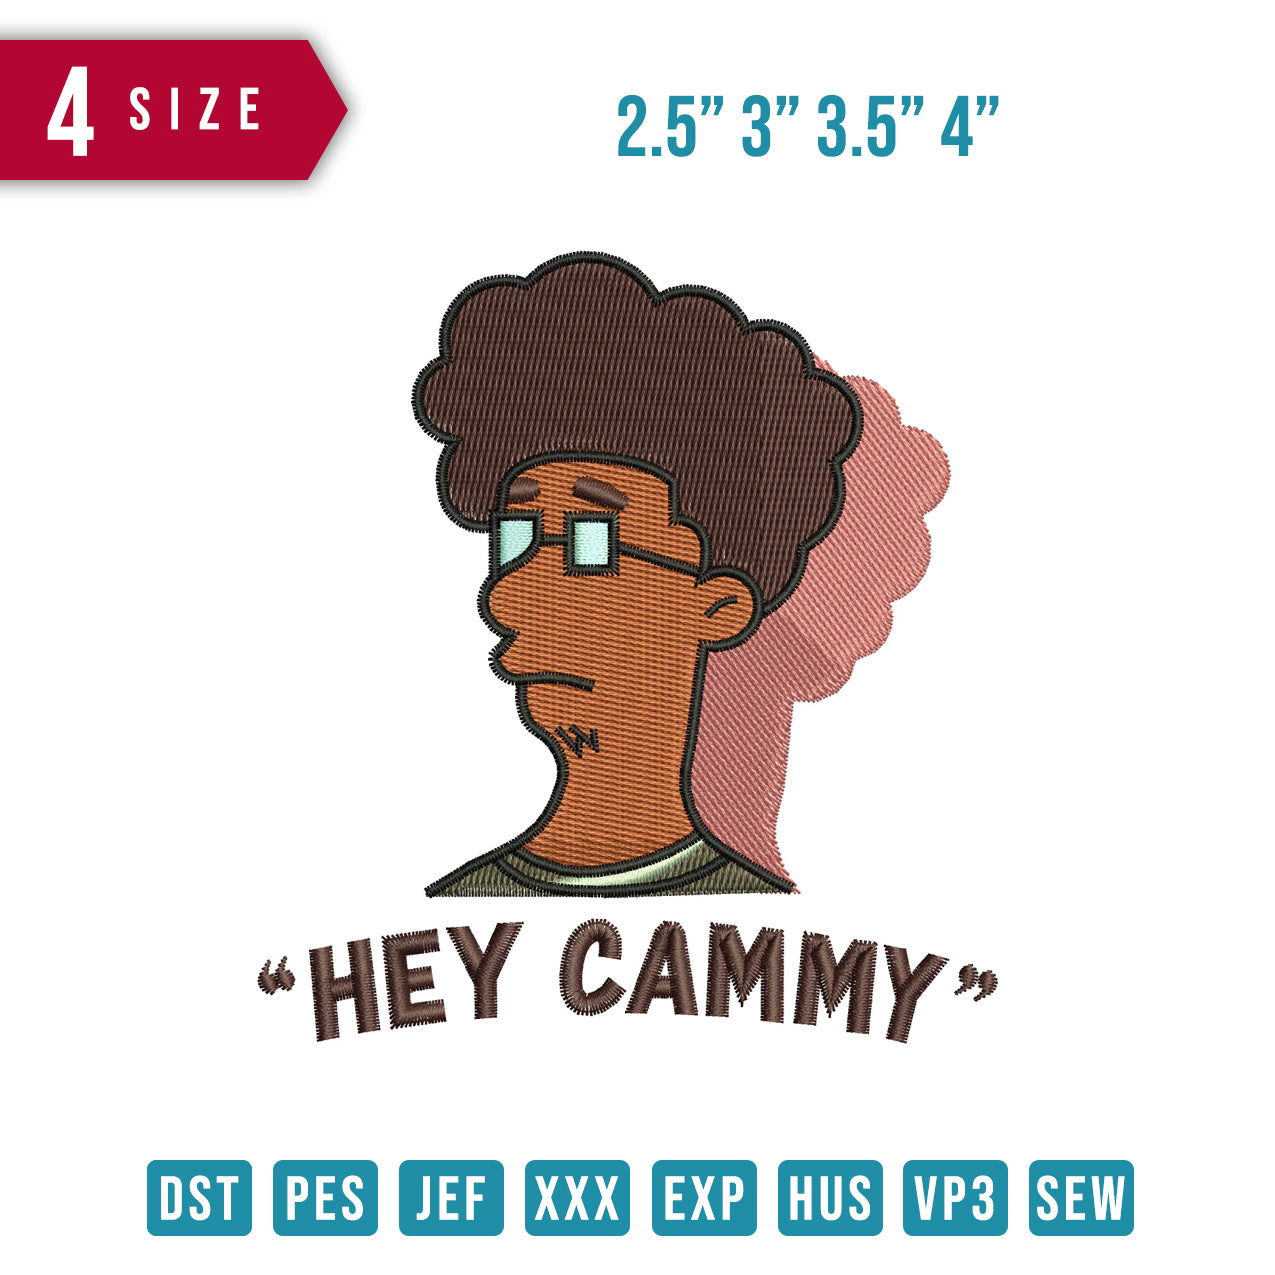 Hi Cammy